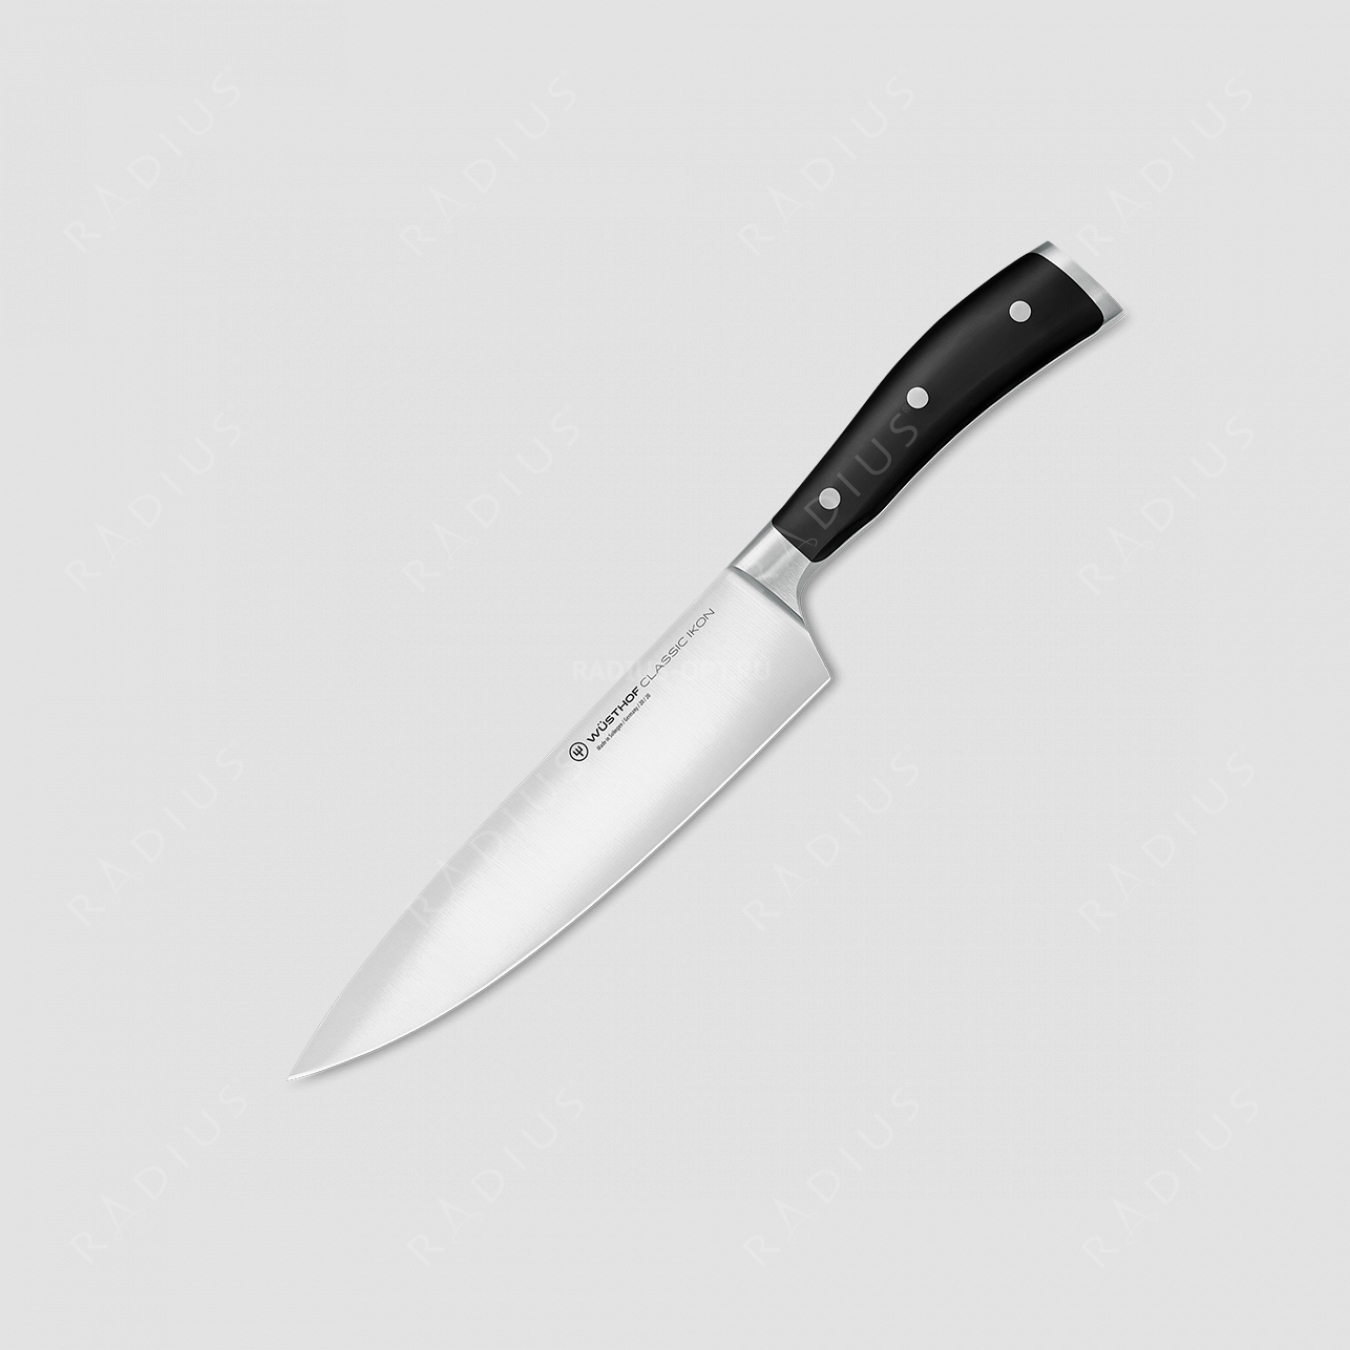 Профессиональный поварской кухонный нож 20 см, серия Classic Ikon, WUESTHOF, Золинген, Германия